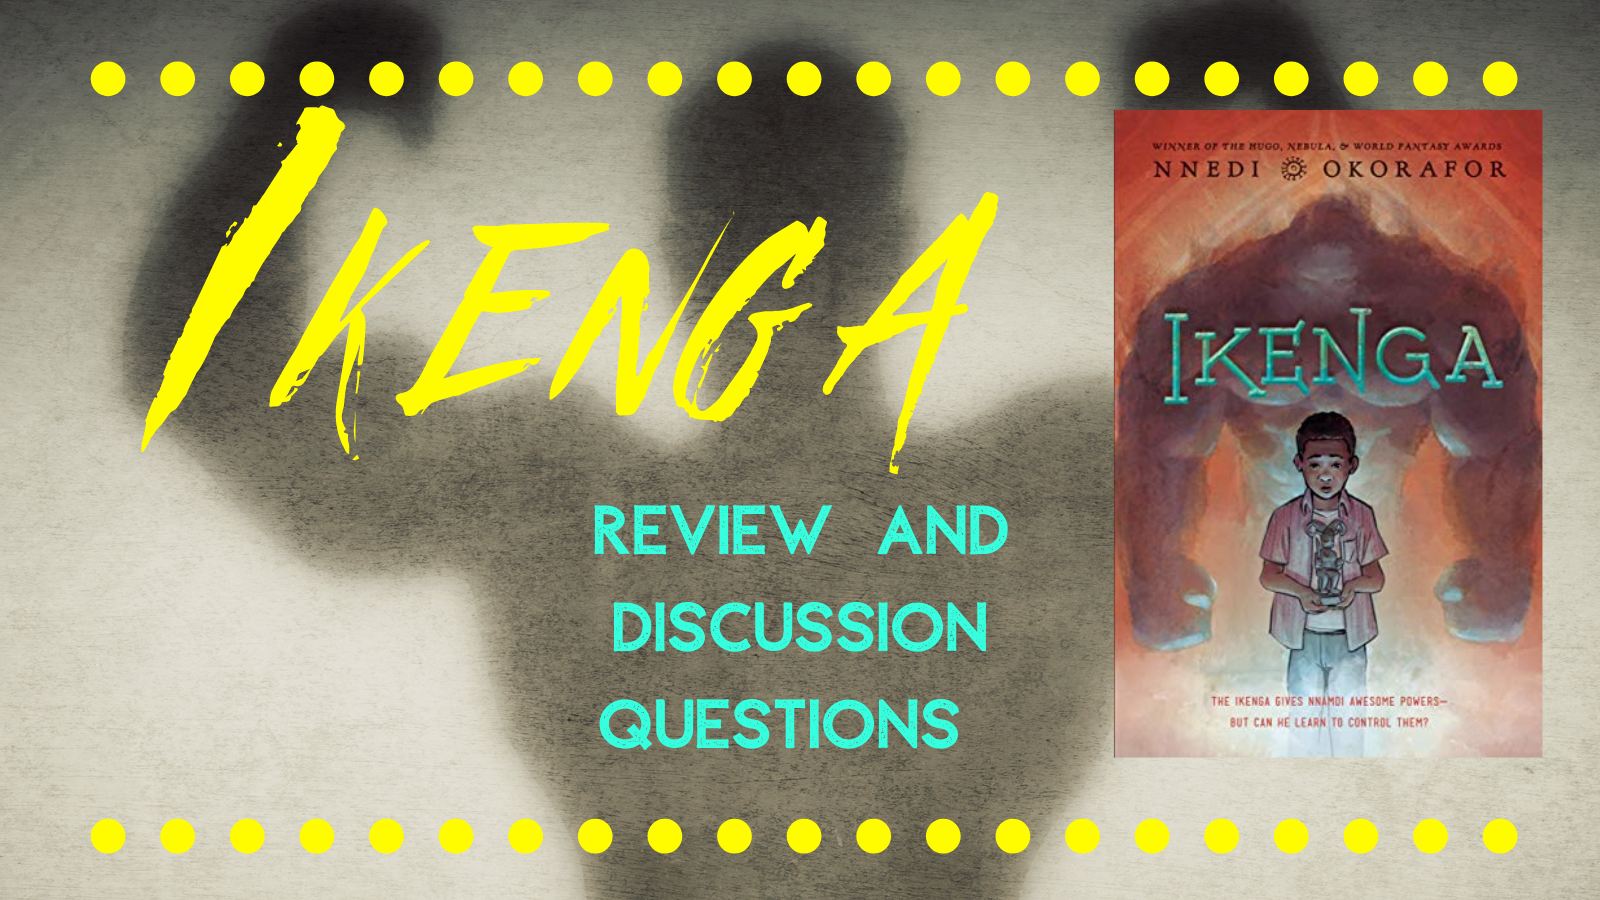 Ikenga discussion, Ikenga review